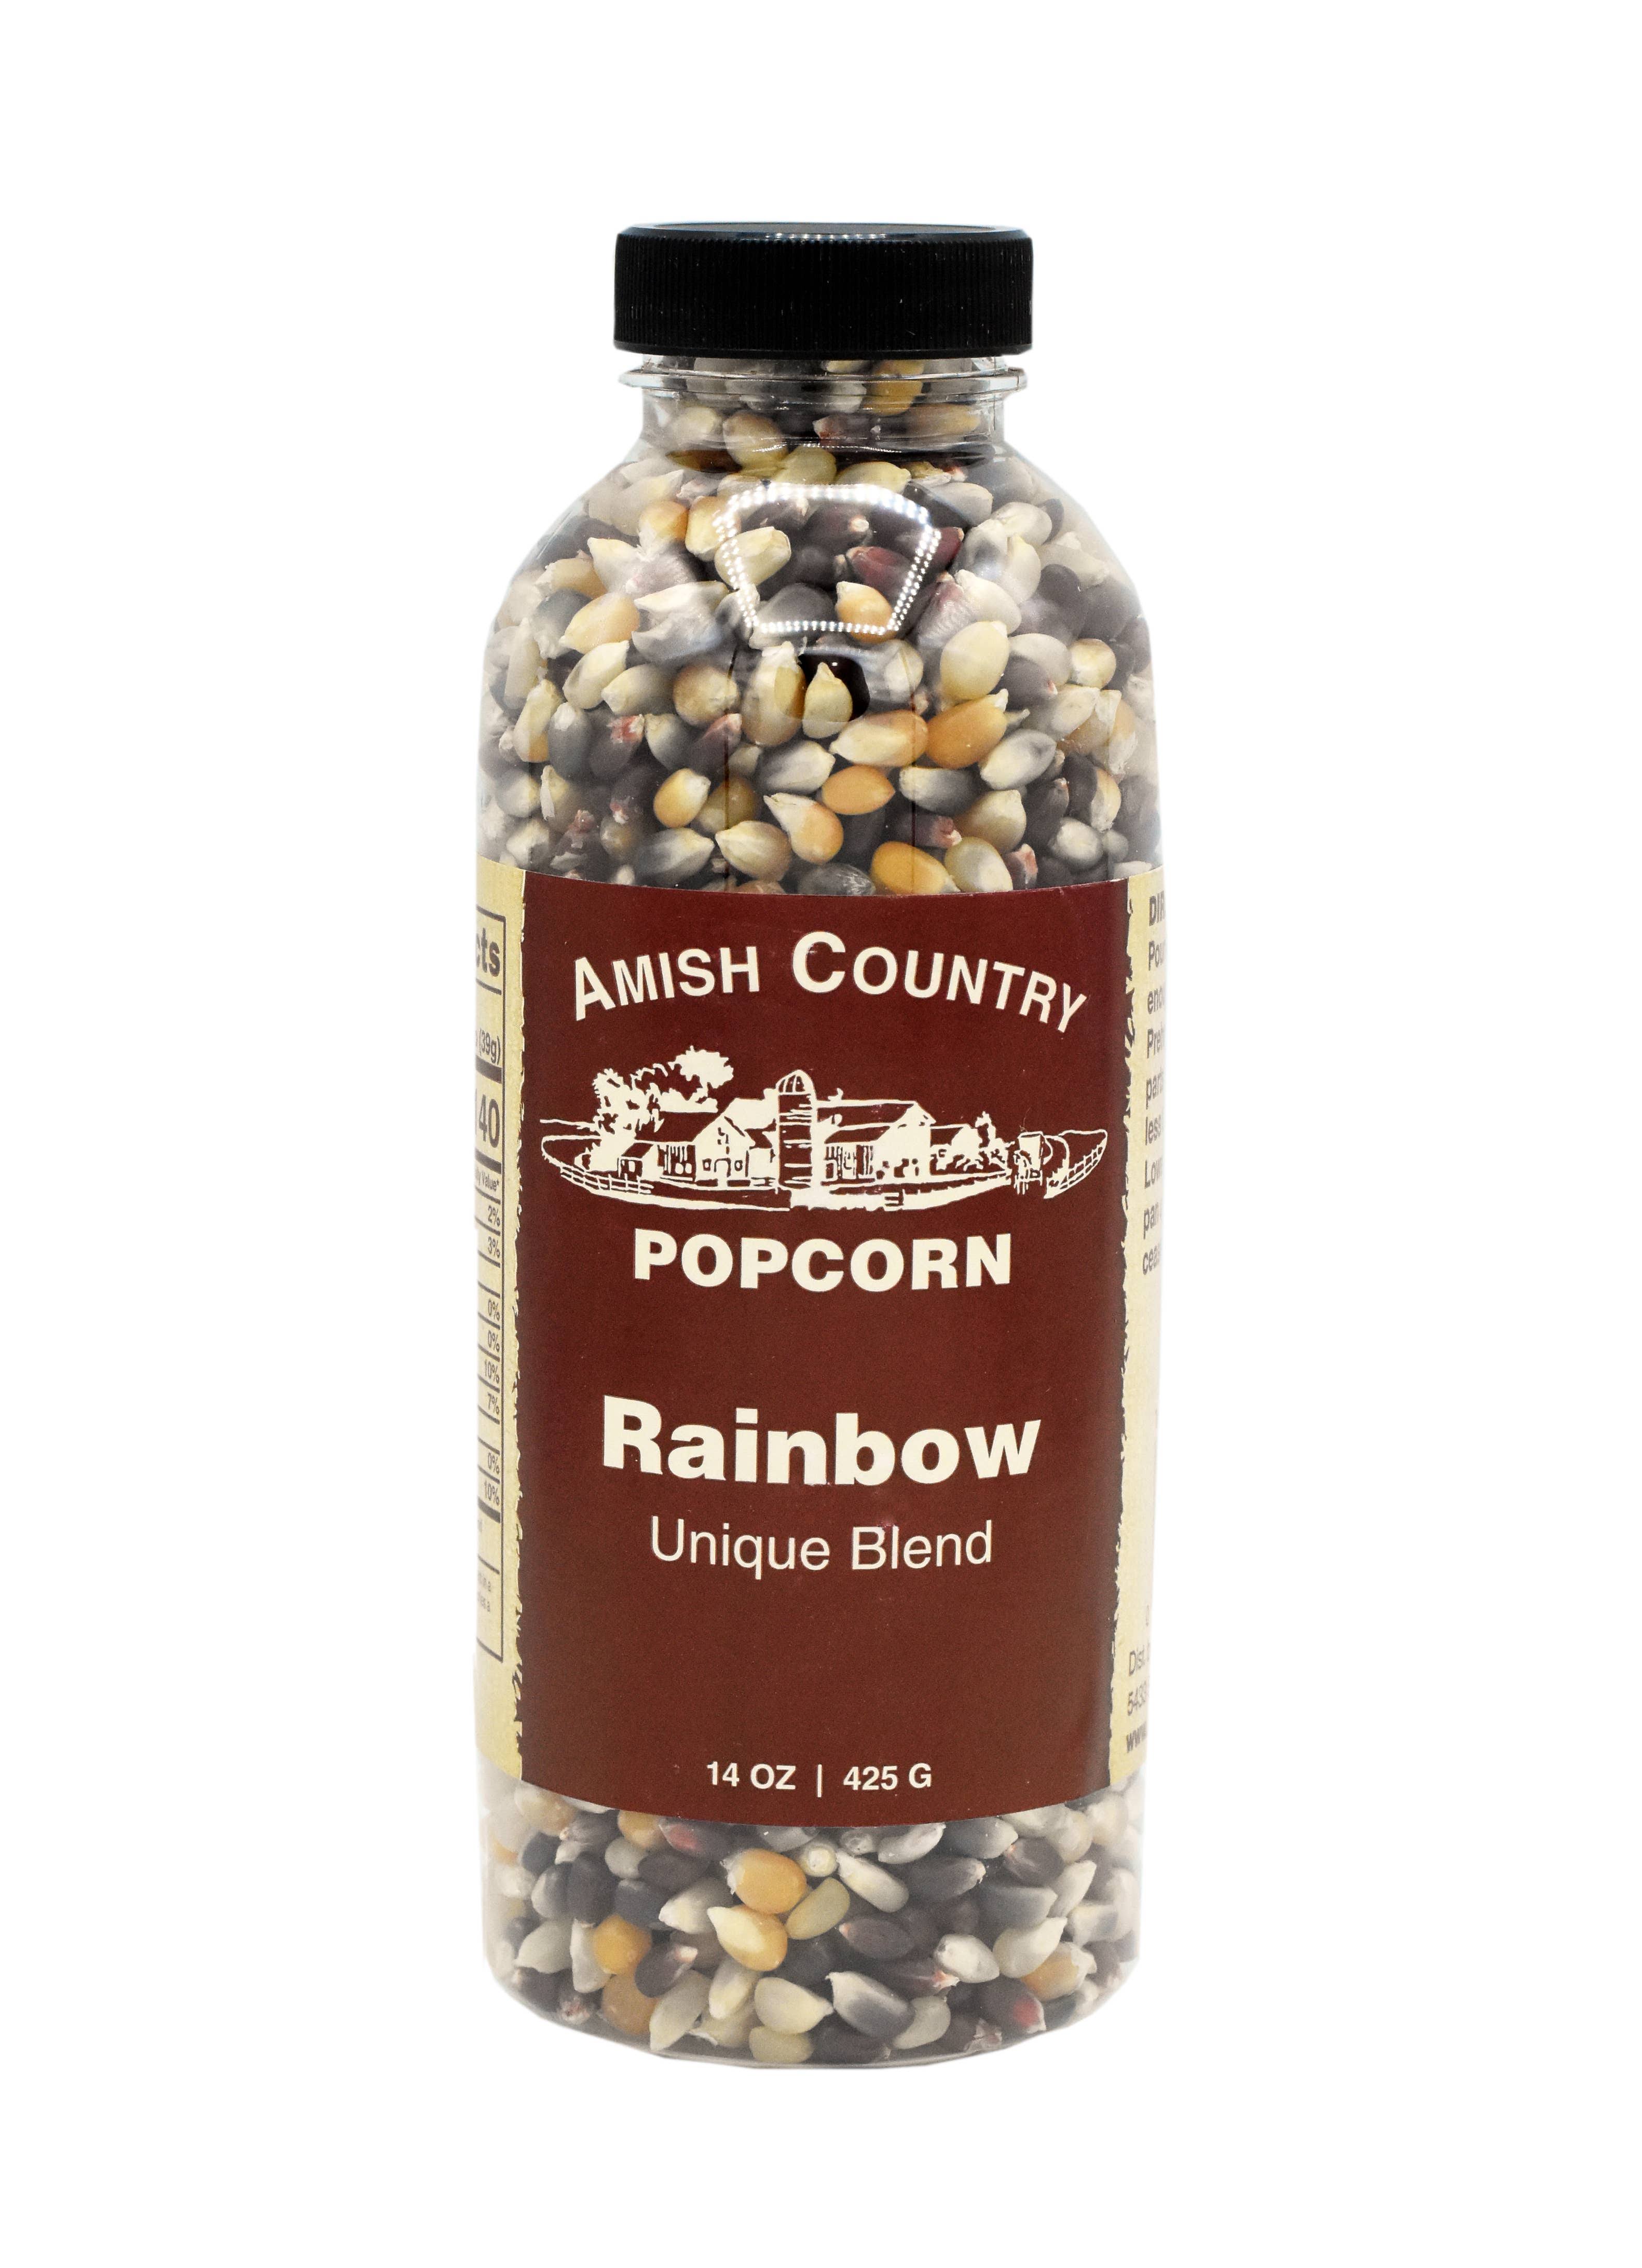 Amish Country Rainbow Popcorn Bottle, 14 oz